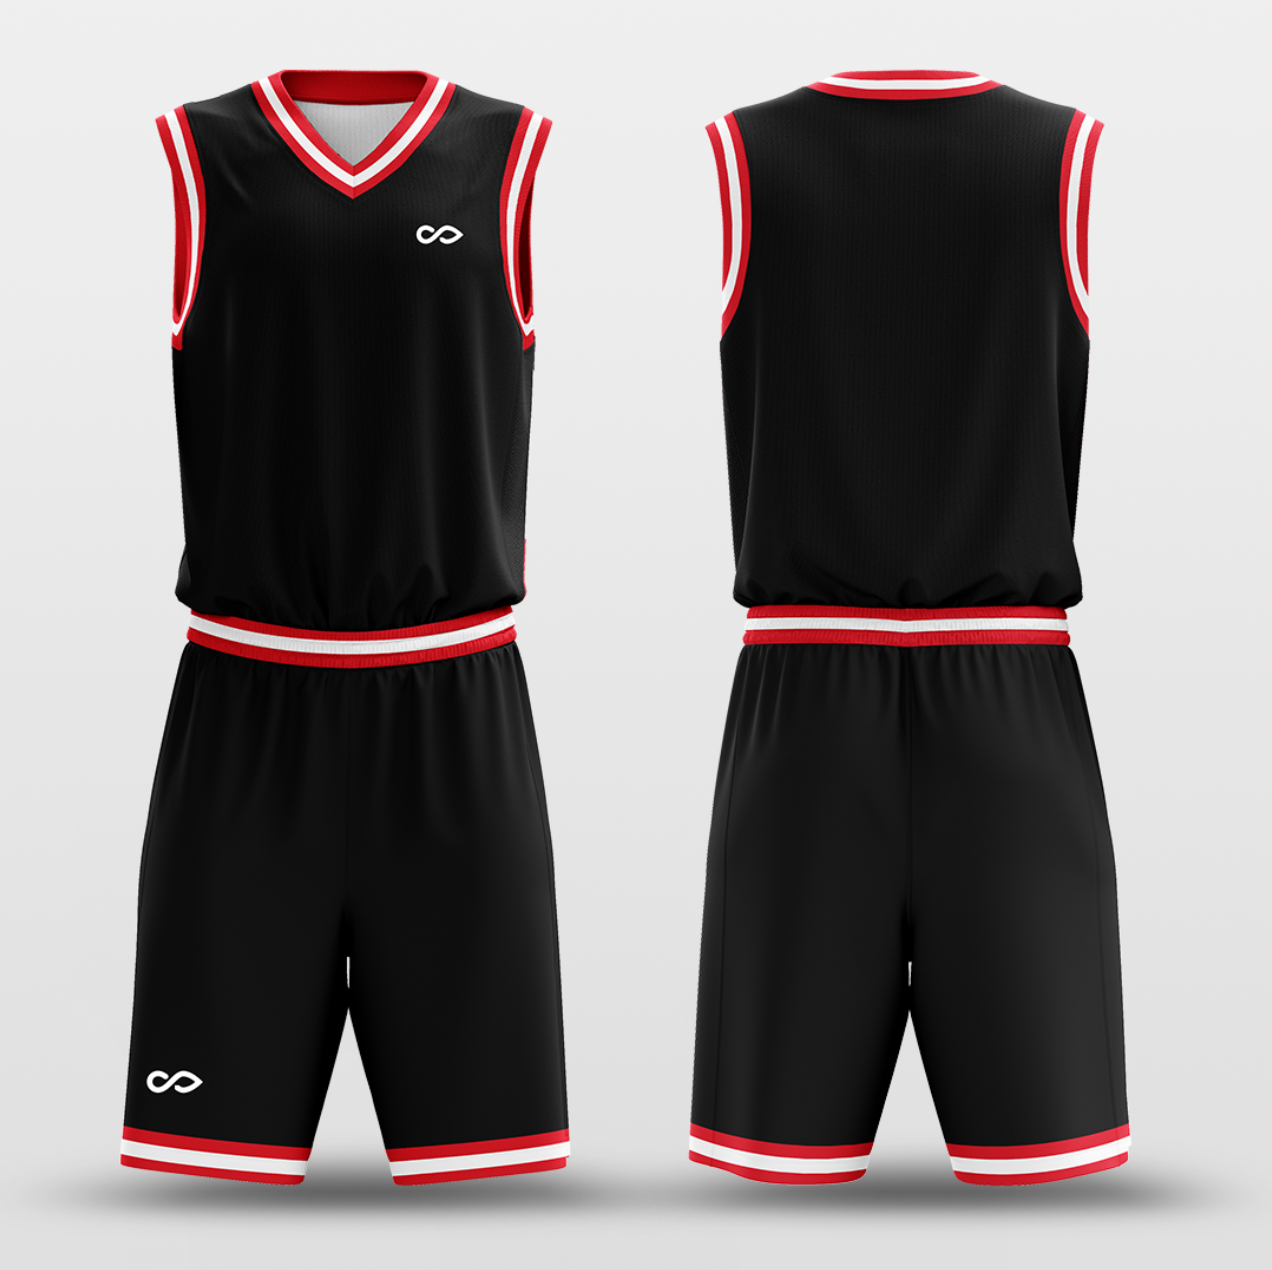 Black Red White - Custom Basketball Jersey Set Design for Team